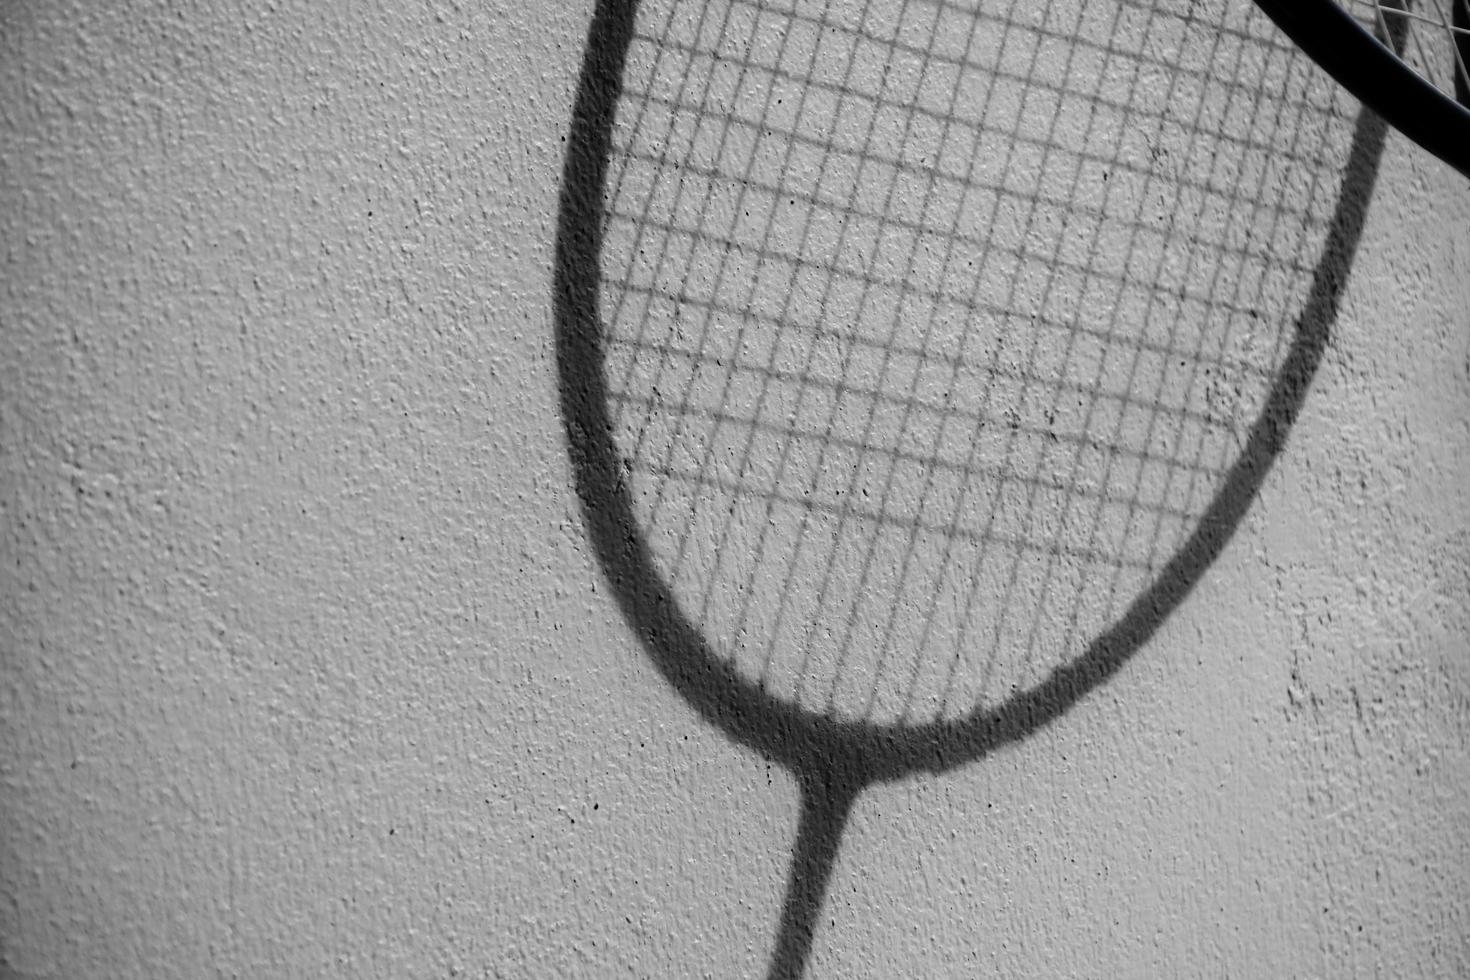 équipements sportifs de badminton, volants, raquette, grip, au sol du terrain de badminton intérieur. photo